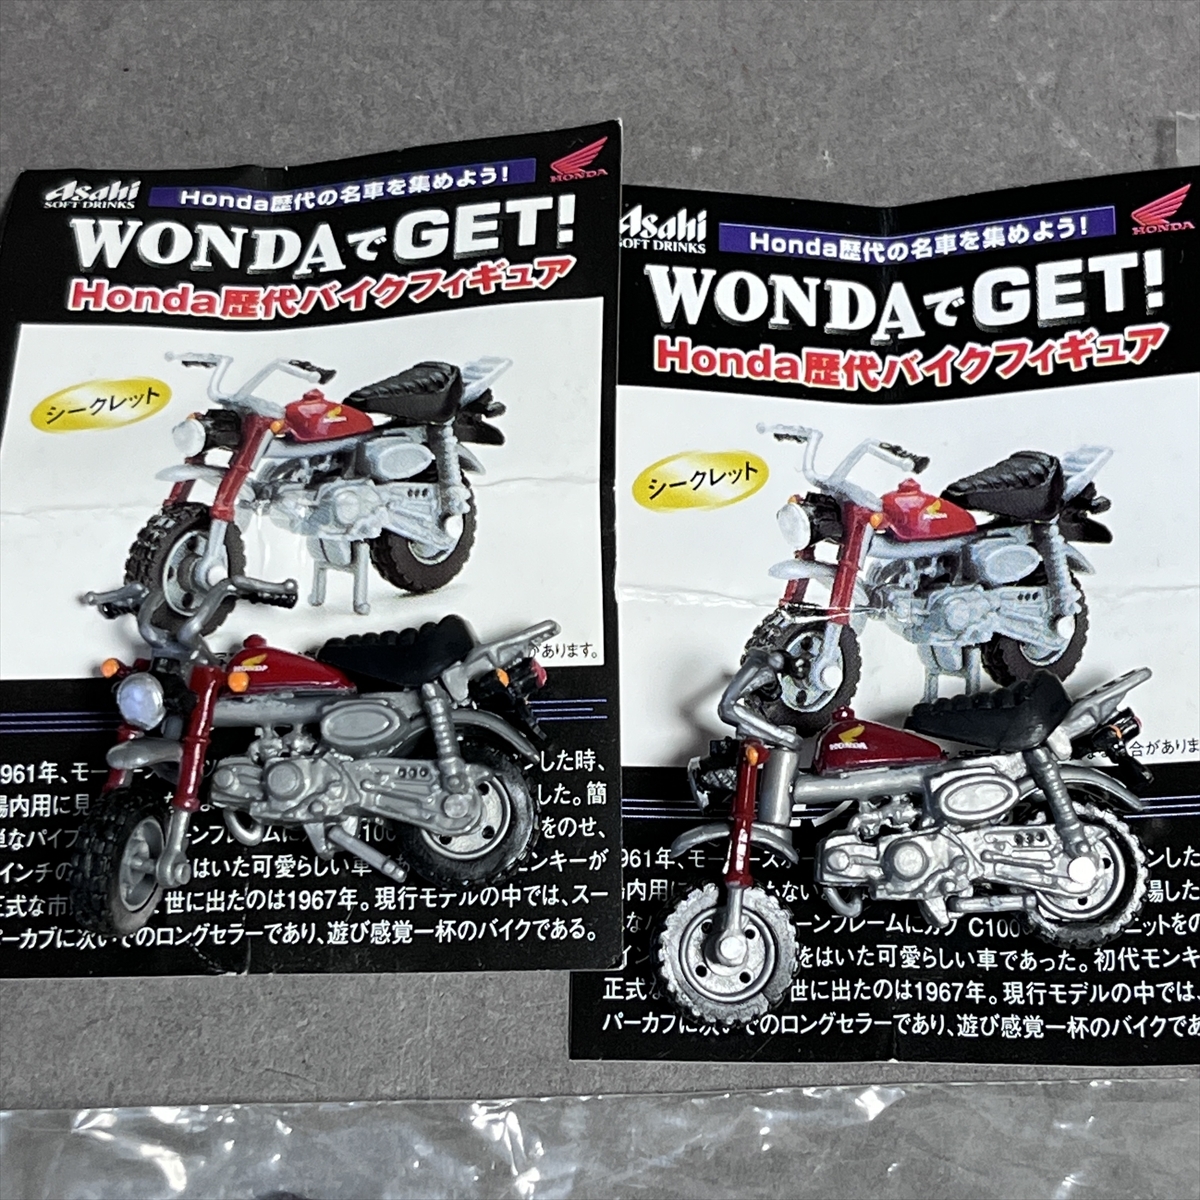 ◆ アサヒ WONDA ワンダ HONDA歴代バイクフィギュア 6個 と サントリー BOSS ボス HONDA バイクフィギュア 4個 合計10個 ◆_シークレット